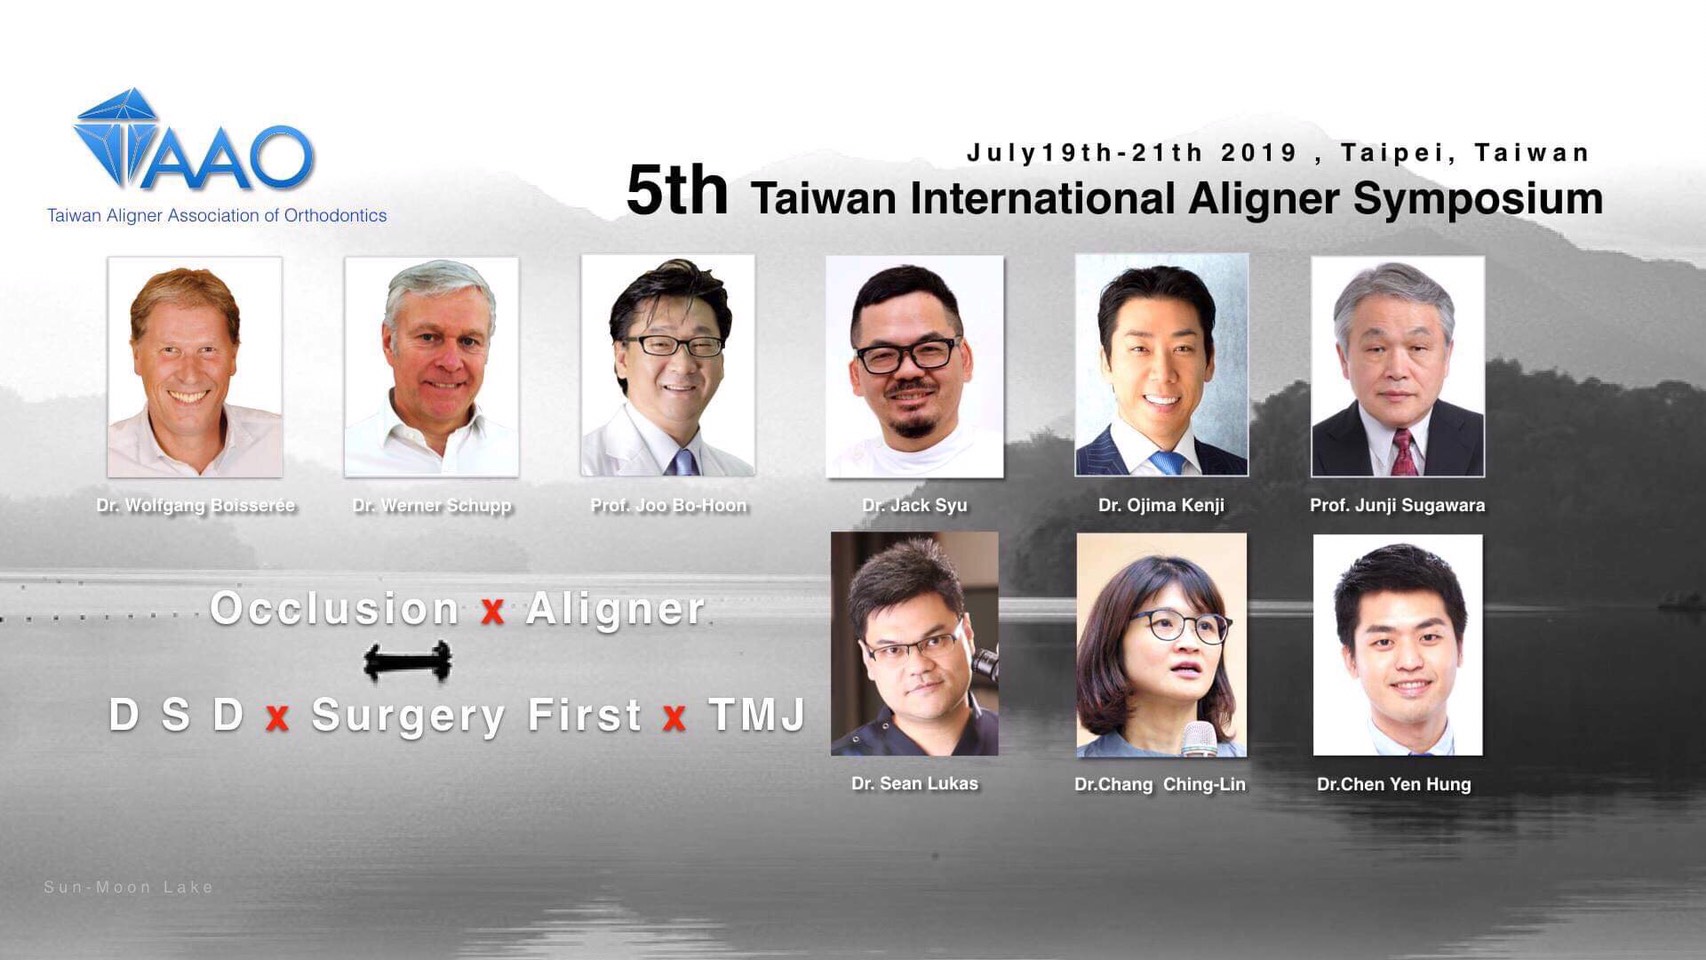 5th Taiwan International Alogner Symposium 2019